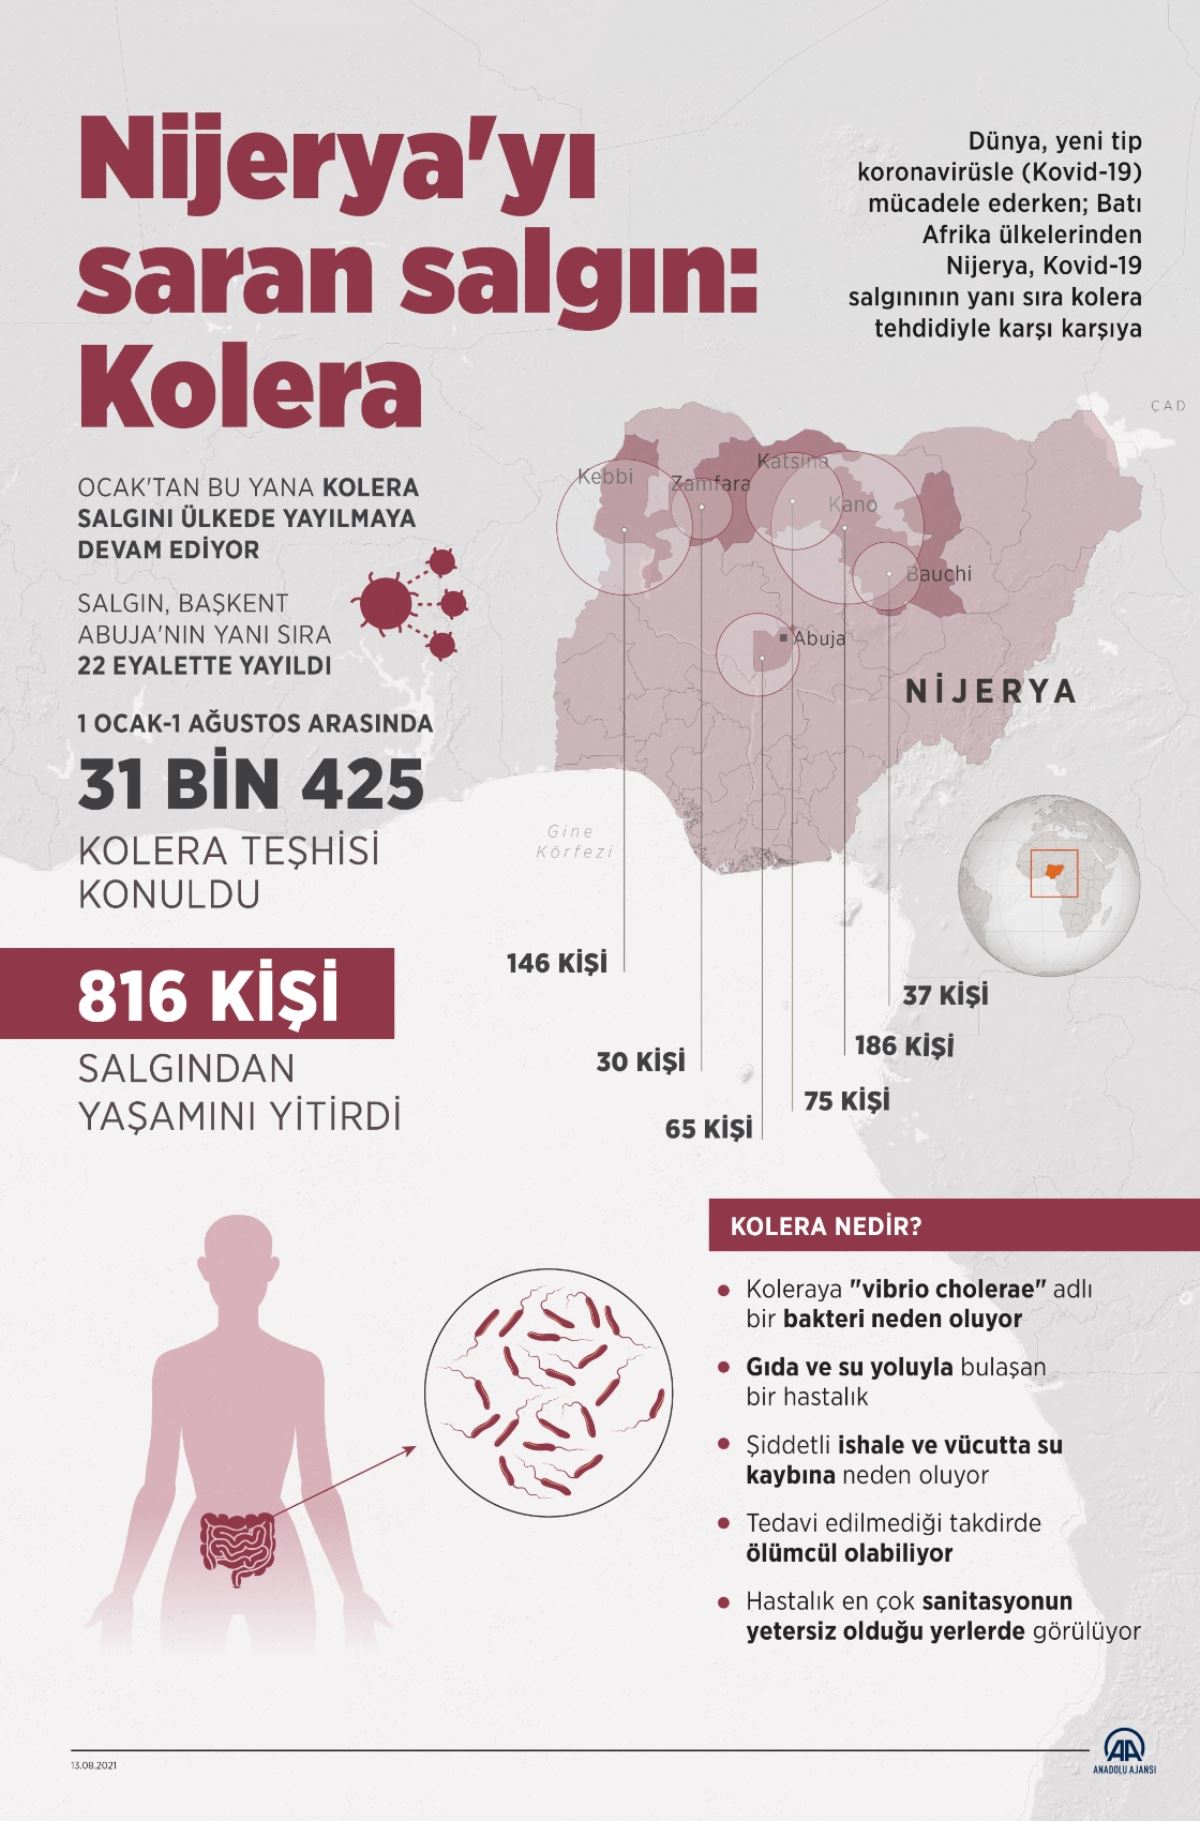 Nijerya'nın Kaduna eyaletinde 83 kişi koleradan yaşamını yitirdi